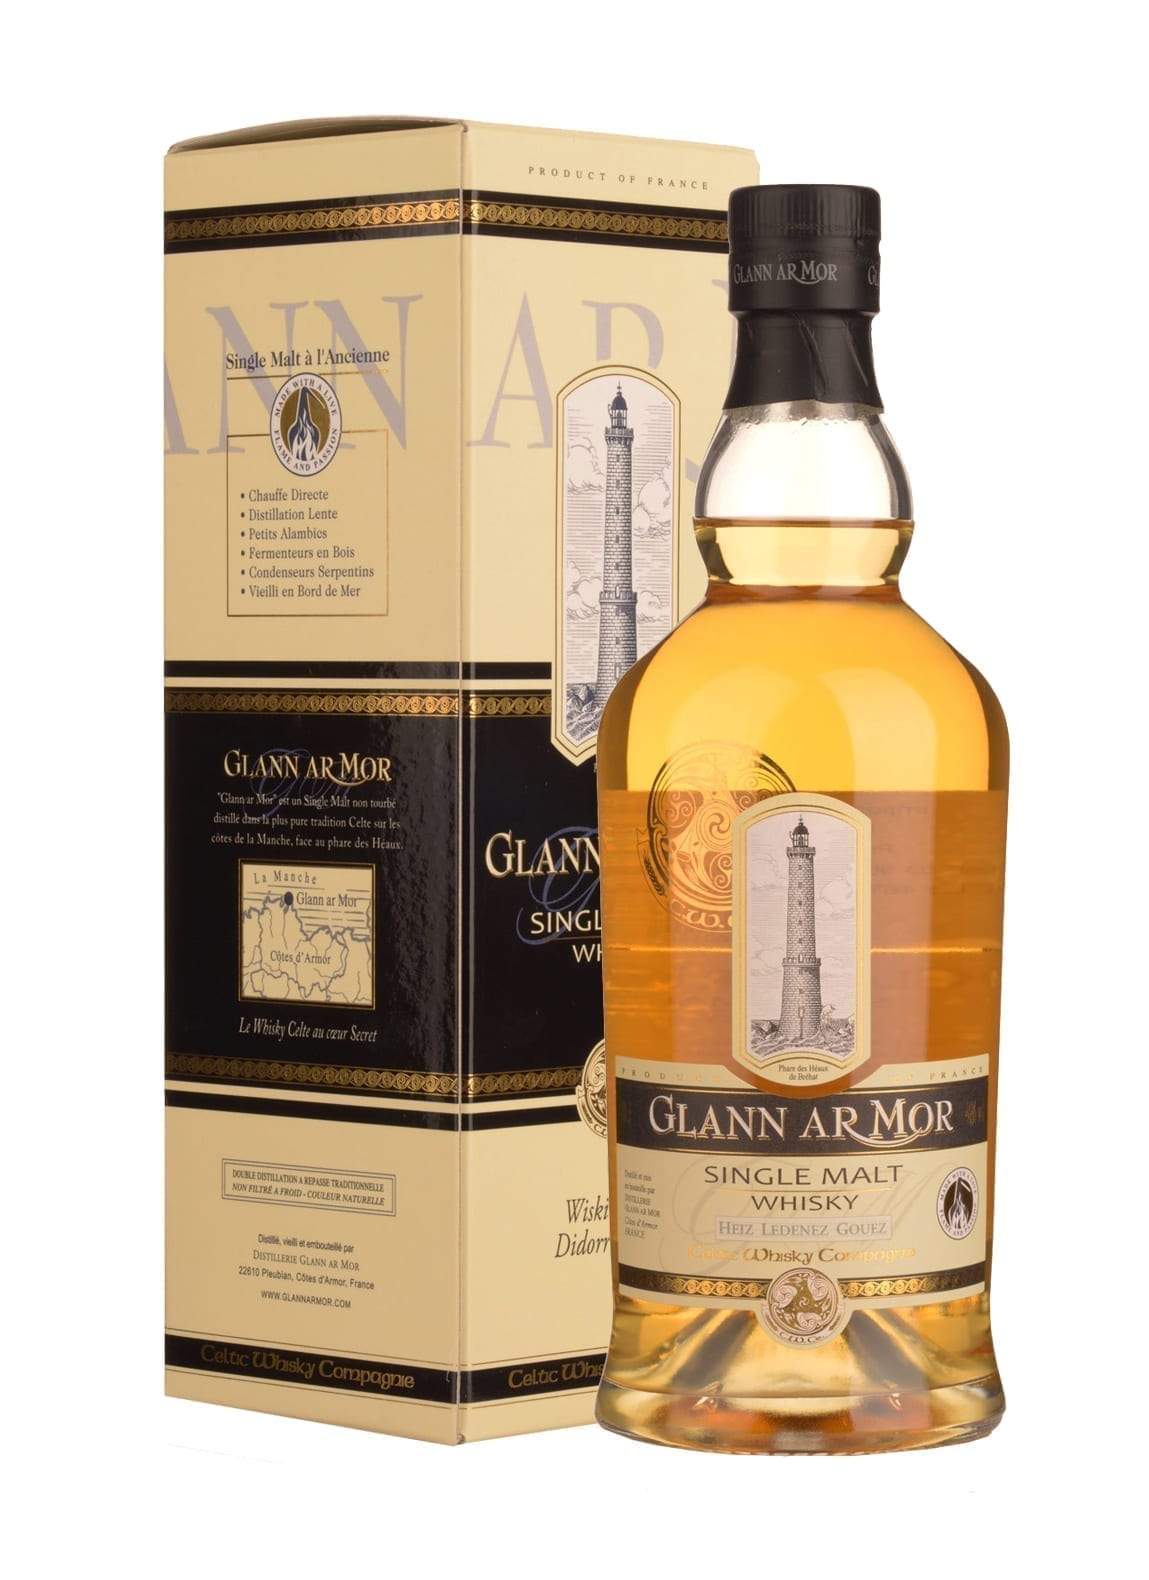 Glann ar Mor Heiz Ledenez Gouez 2012 46% 700ml | Whiskey | Shop online at Spirits of France